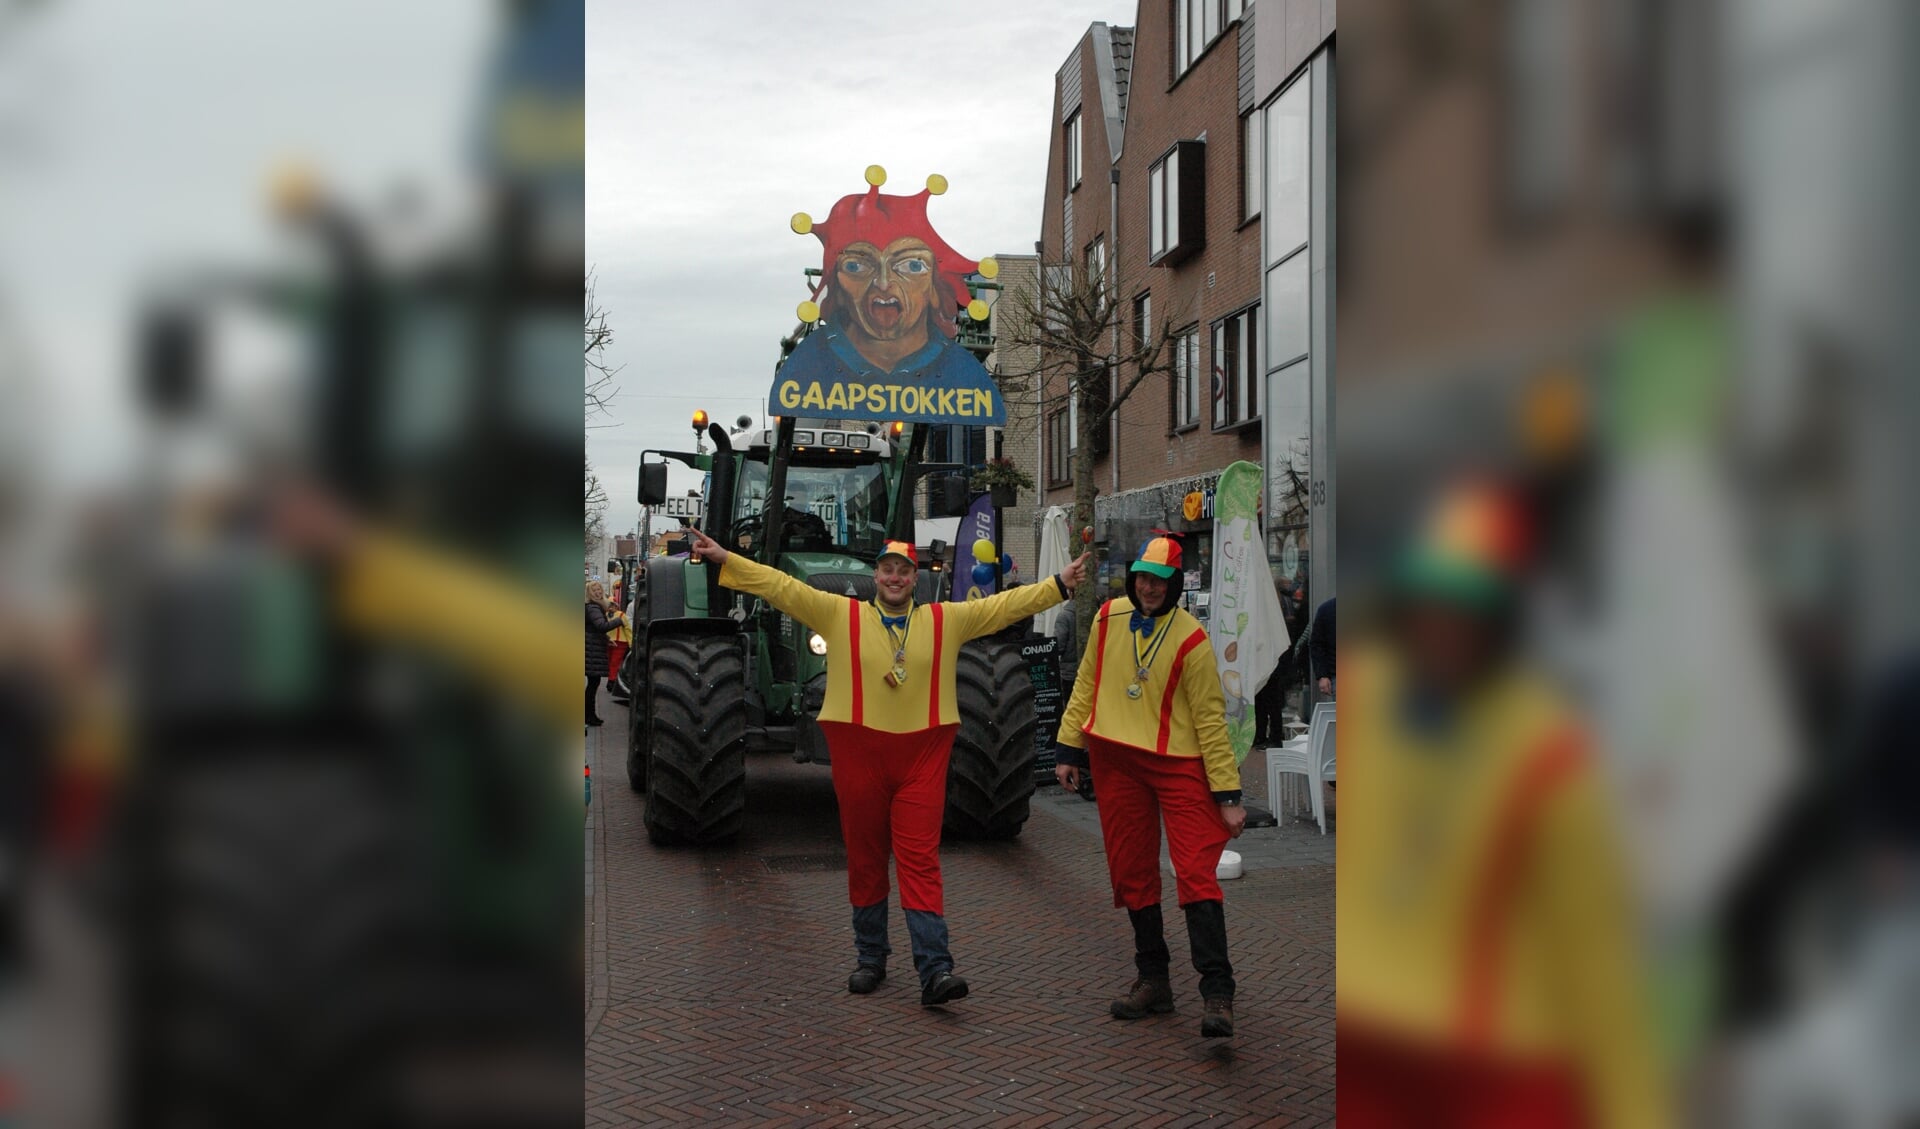 De carnavalsvereniging bestaat vier keer elf jaar, een bijzonder getal voor de Gaapstokken.